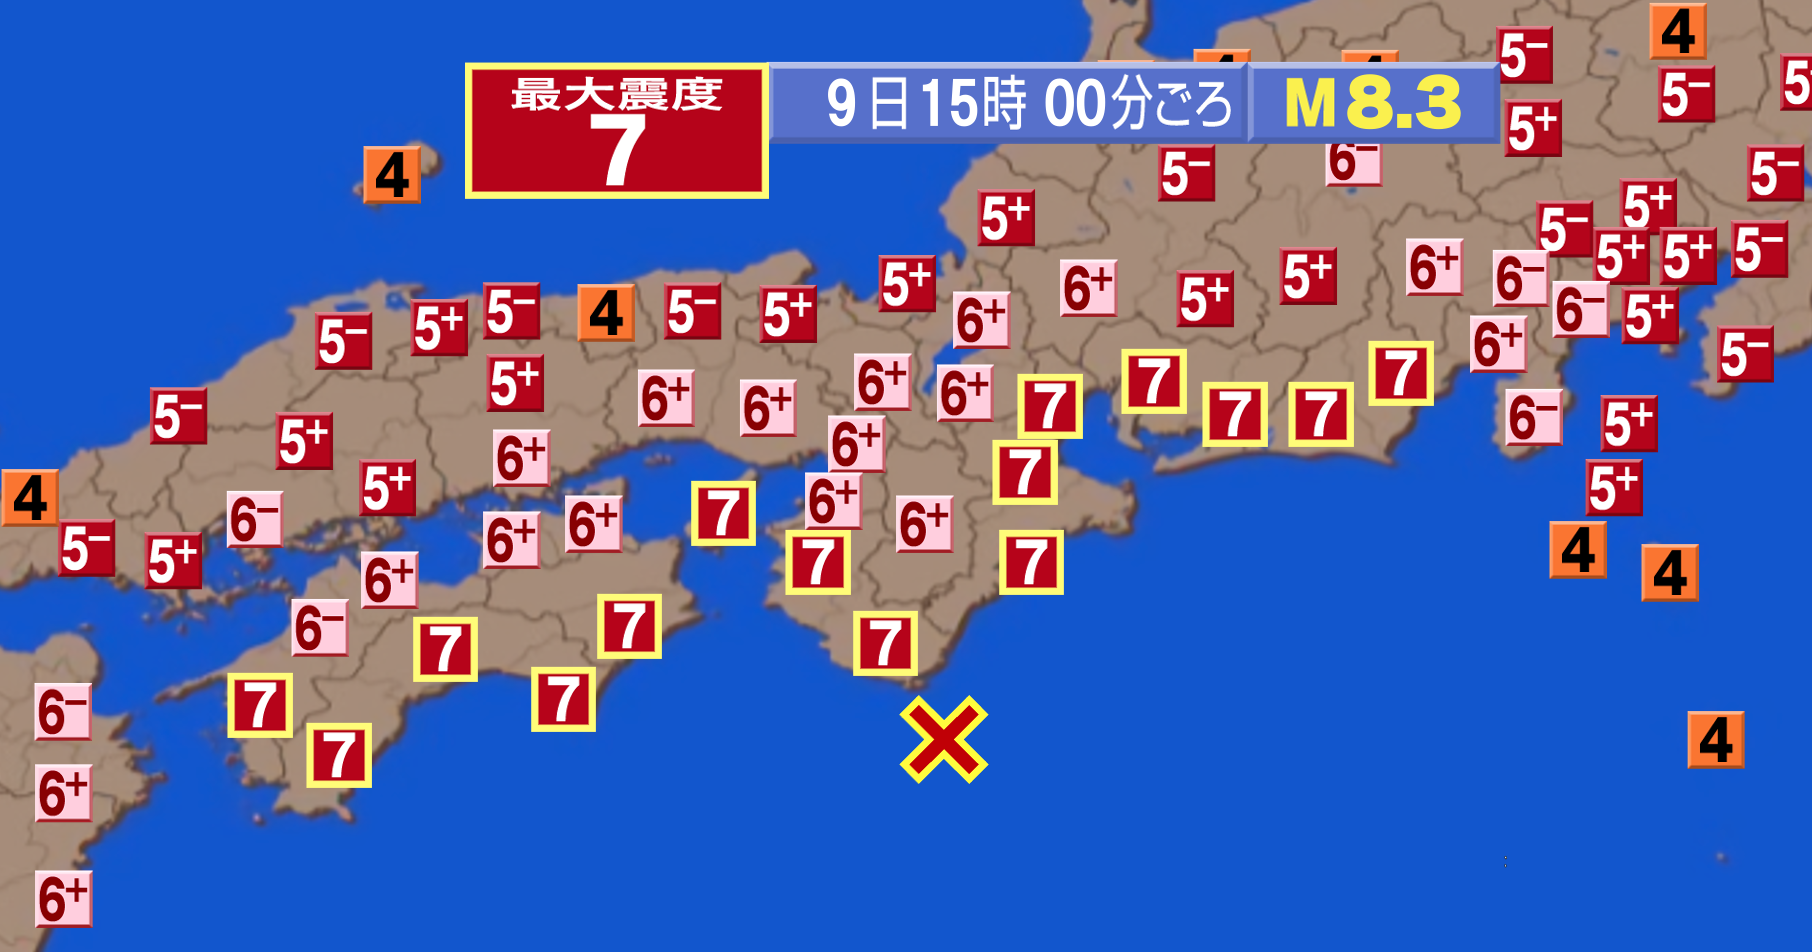 日本の南で起こる 南海トラフ巨大地震 いつ起こってもおかしくありません Newscast